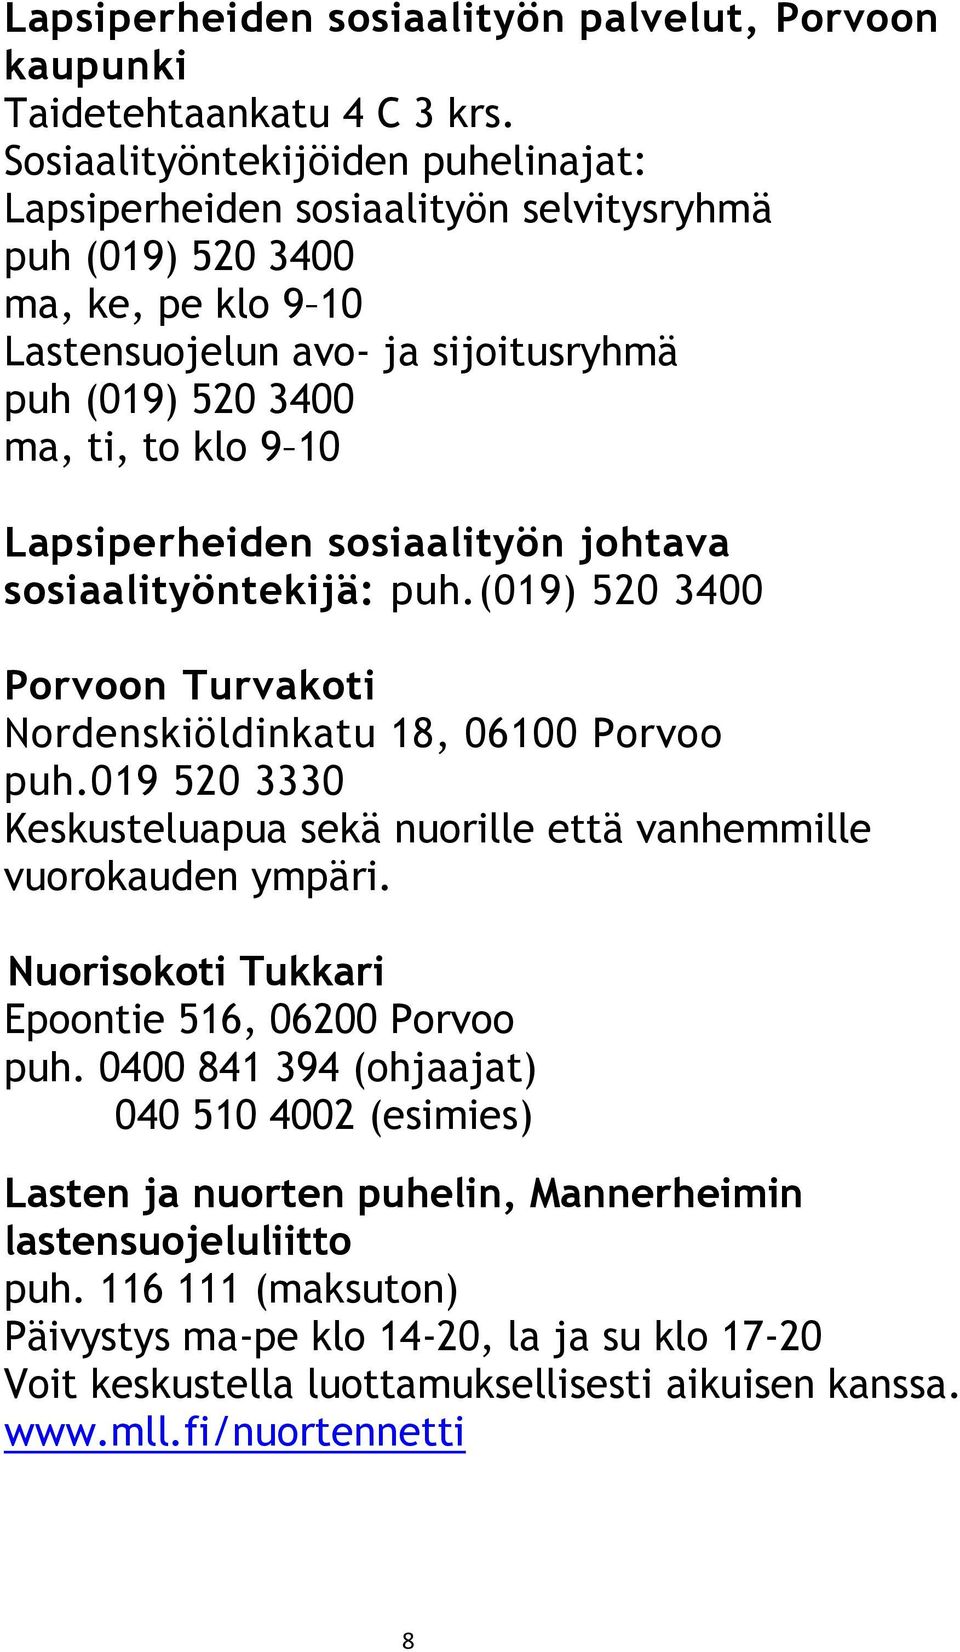 Lapsiperheiden sosiaalityön johtava sosiaalityöntekijä: puh.(019) 520 3400 Porvoon Turvakoti Nordenskiöldinkatu 18, 06100 Porvoo puh.